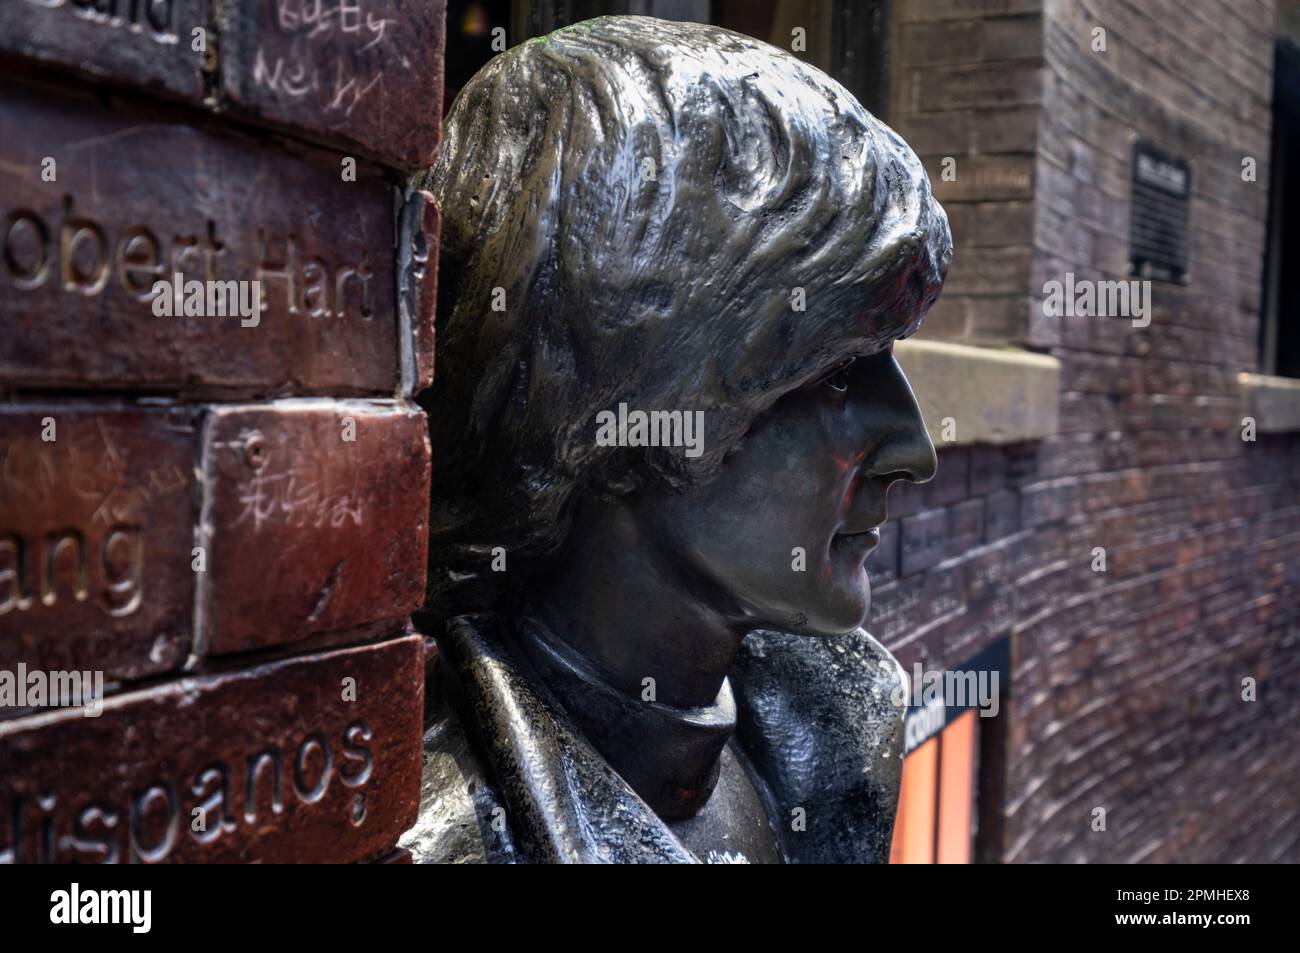 Détail de la statue de John Lennon devant le Cavern Pub, Matthew Street, Liverpool, Merseyside, Angleterre, Royaume-Uni, Europe Banque D'Images